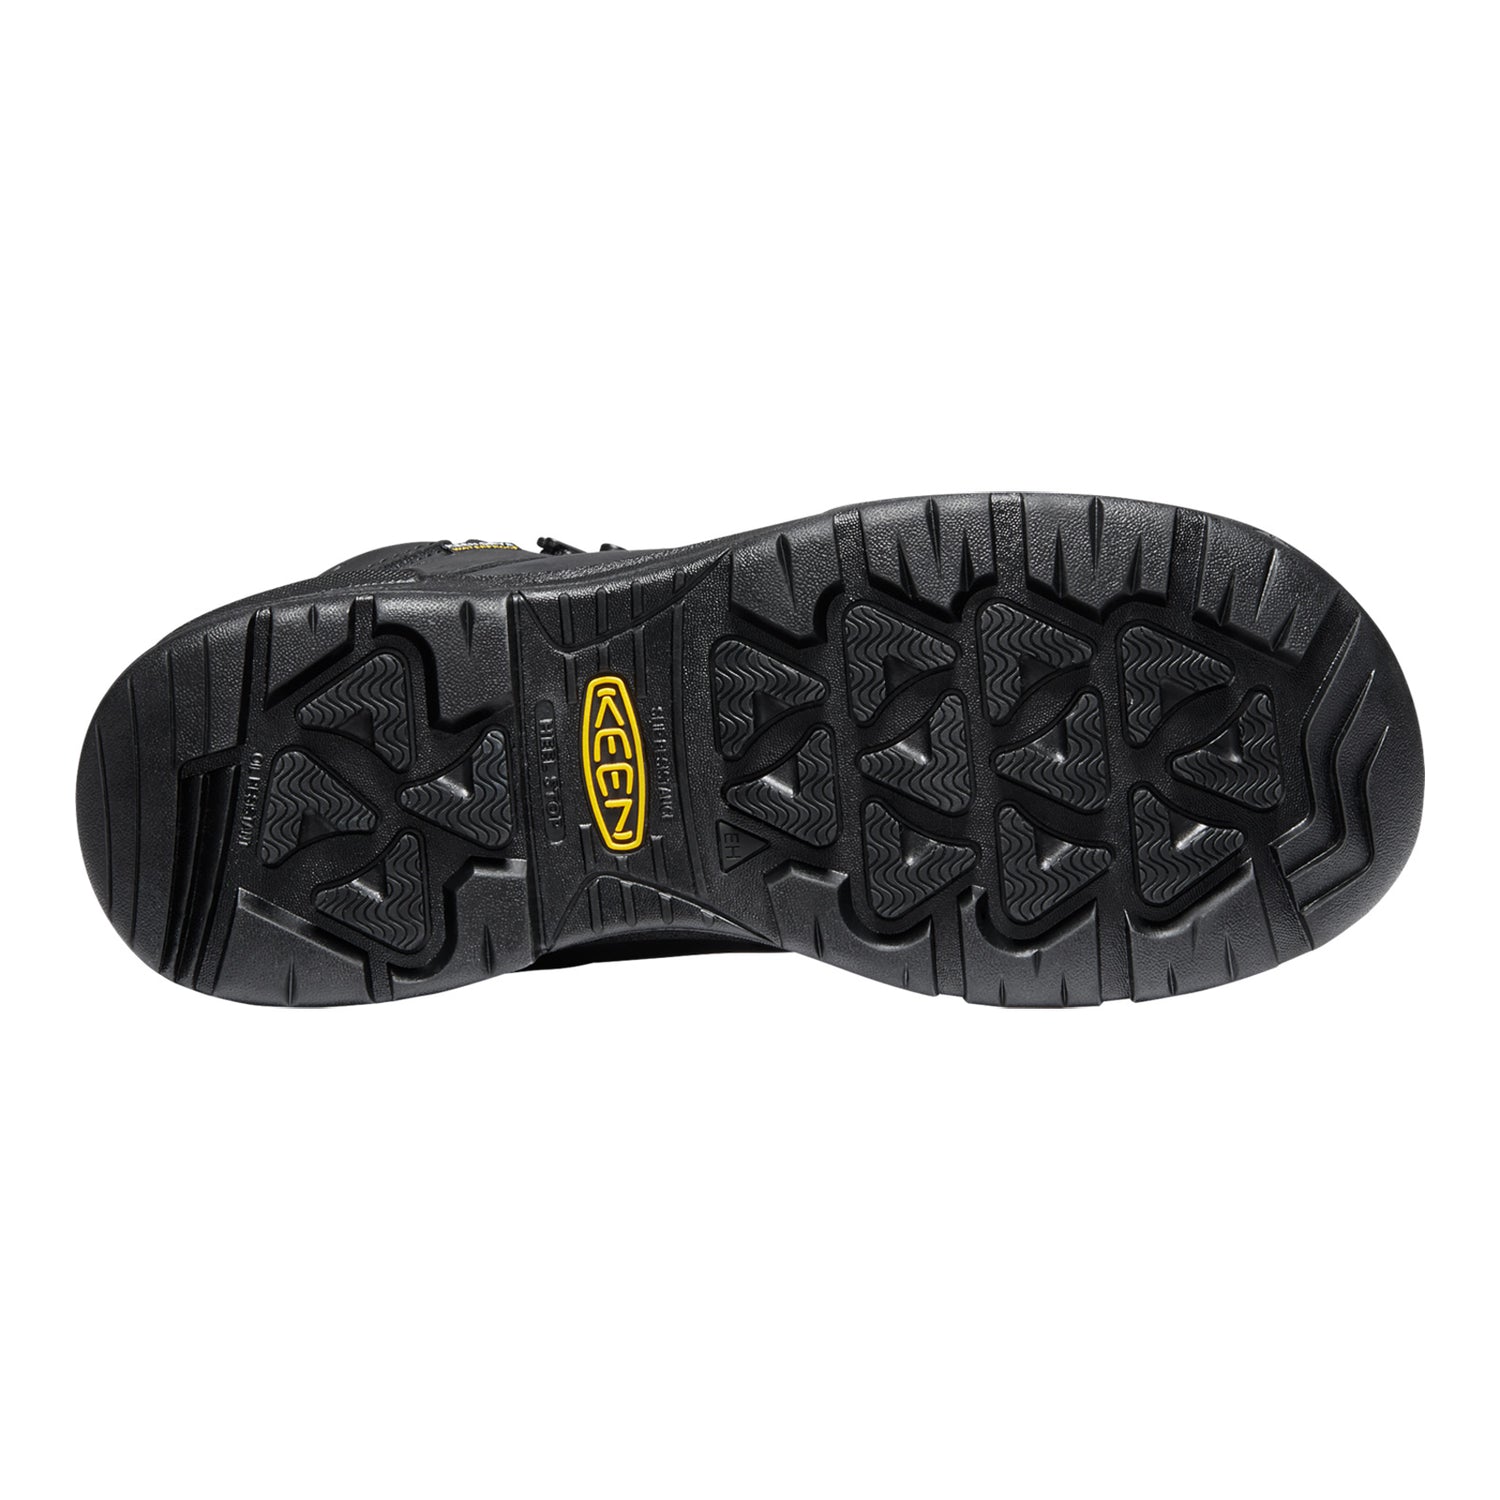 Peltz Shoes  Men's KEEN Utility Portland 6 inch Waterproof Boot Black/Black 1024573